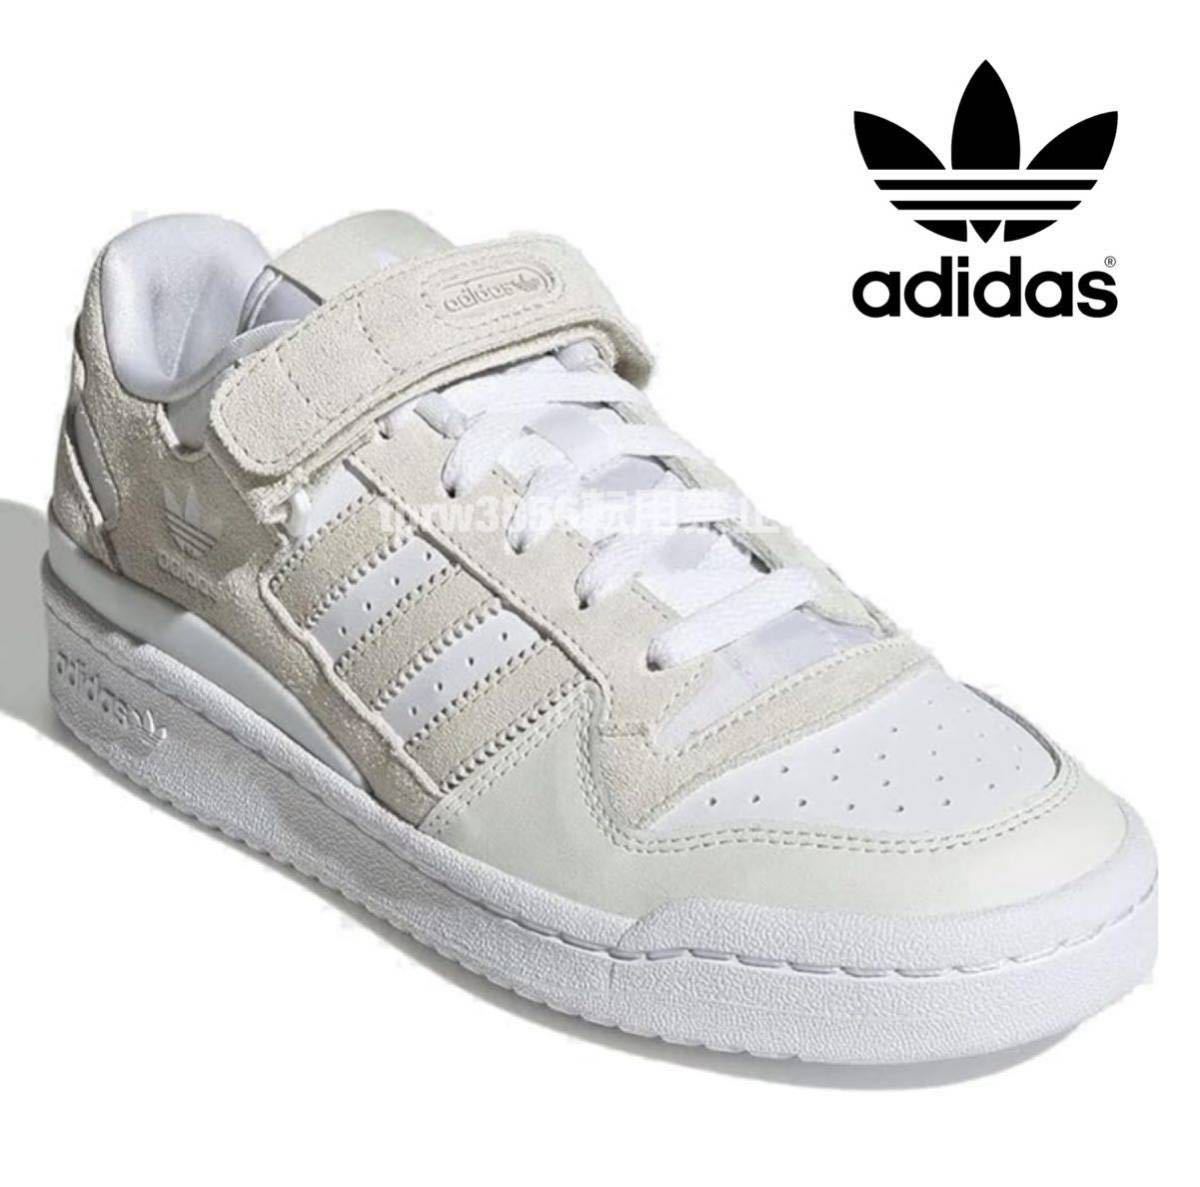  новый товар не использовался Adidas FORUM LOW[27.5cm] форум натуральный кожа кожа натуральная кожа adidas спортивные туфли Adidas 5919 low cut серый обувь 